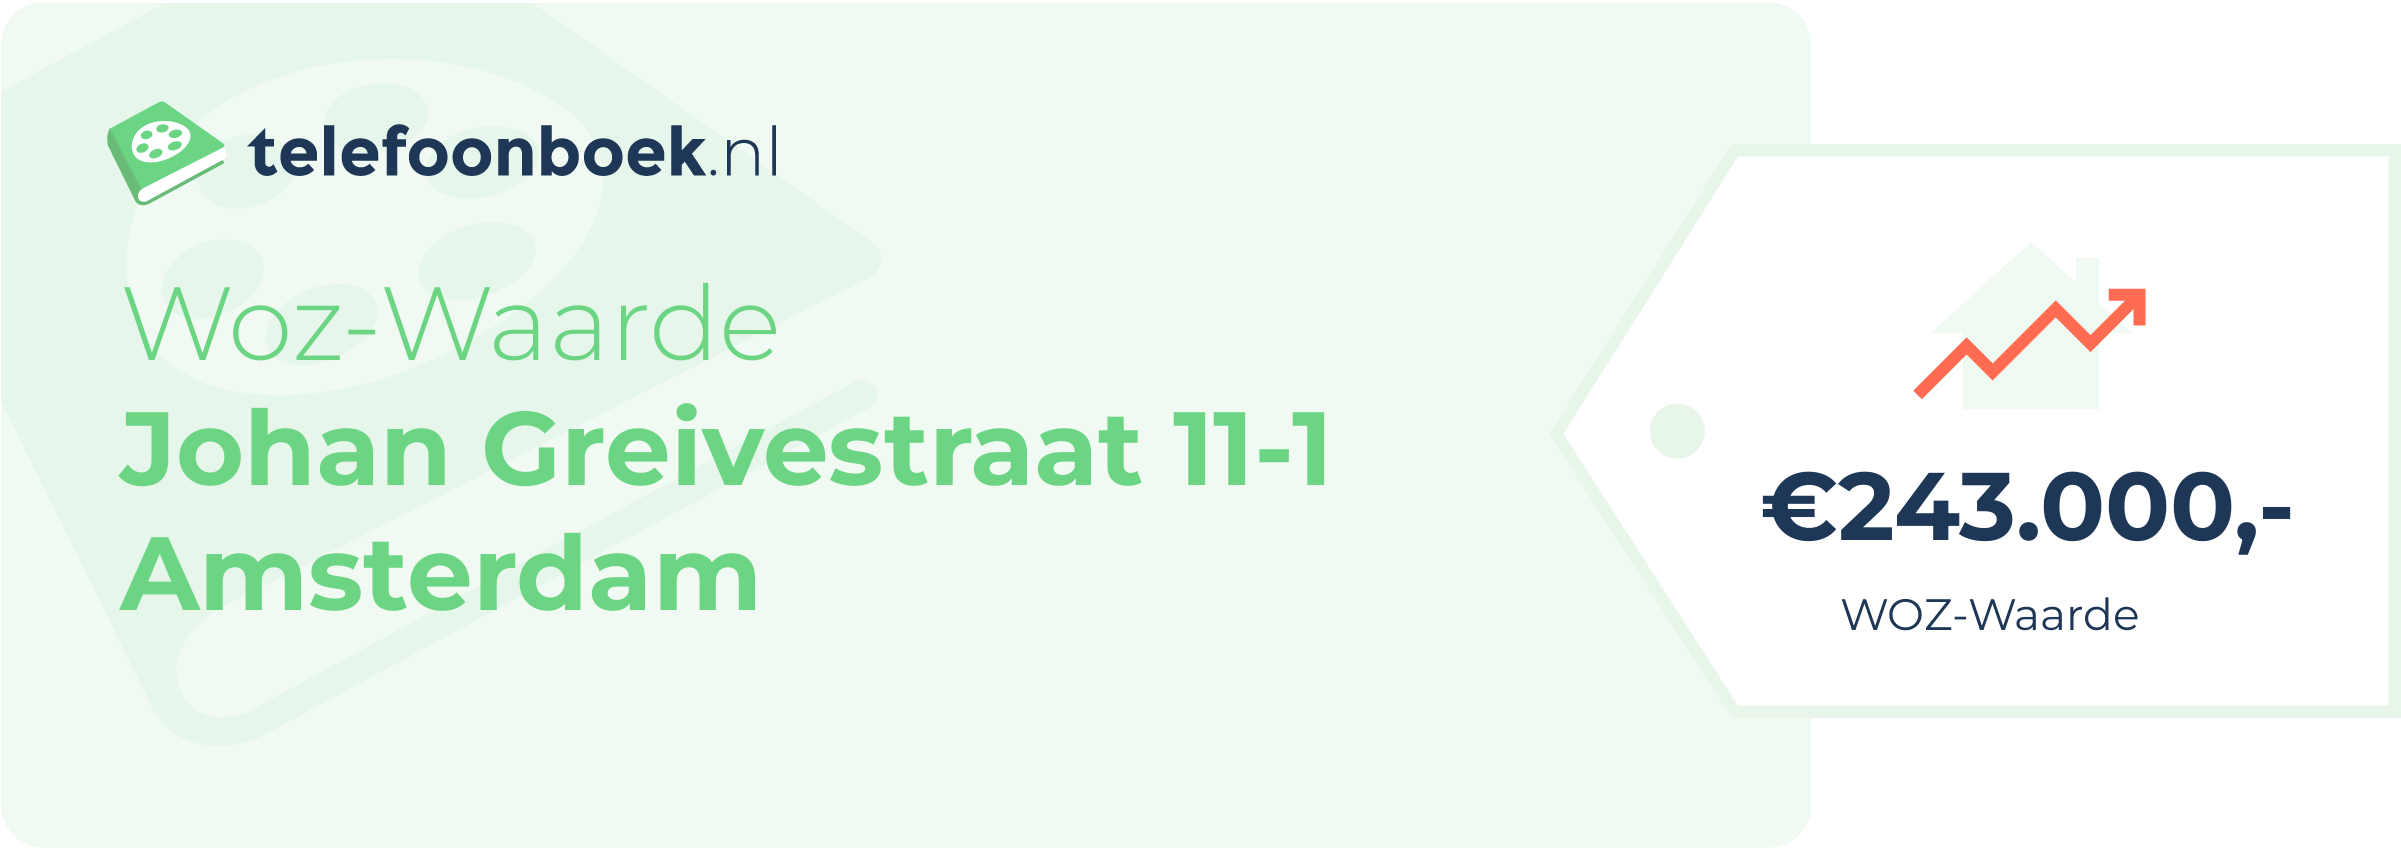 WOZ-waarde Johan Greivestraat 11-1 Amsterdam